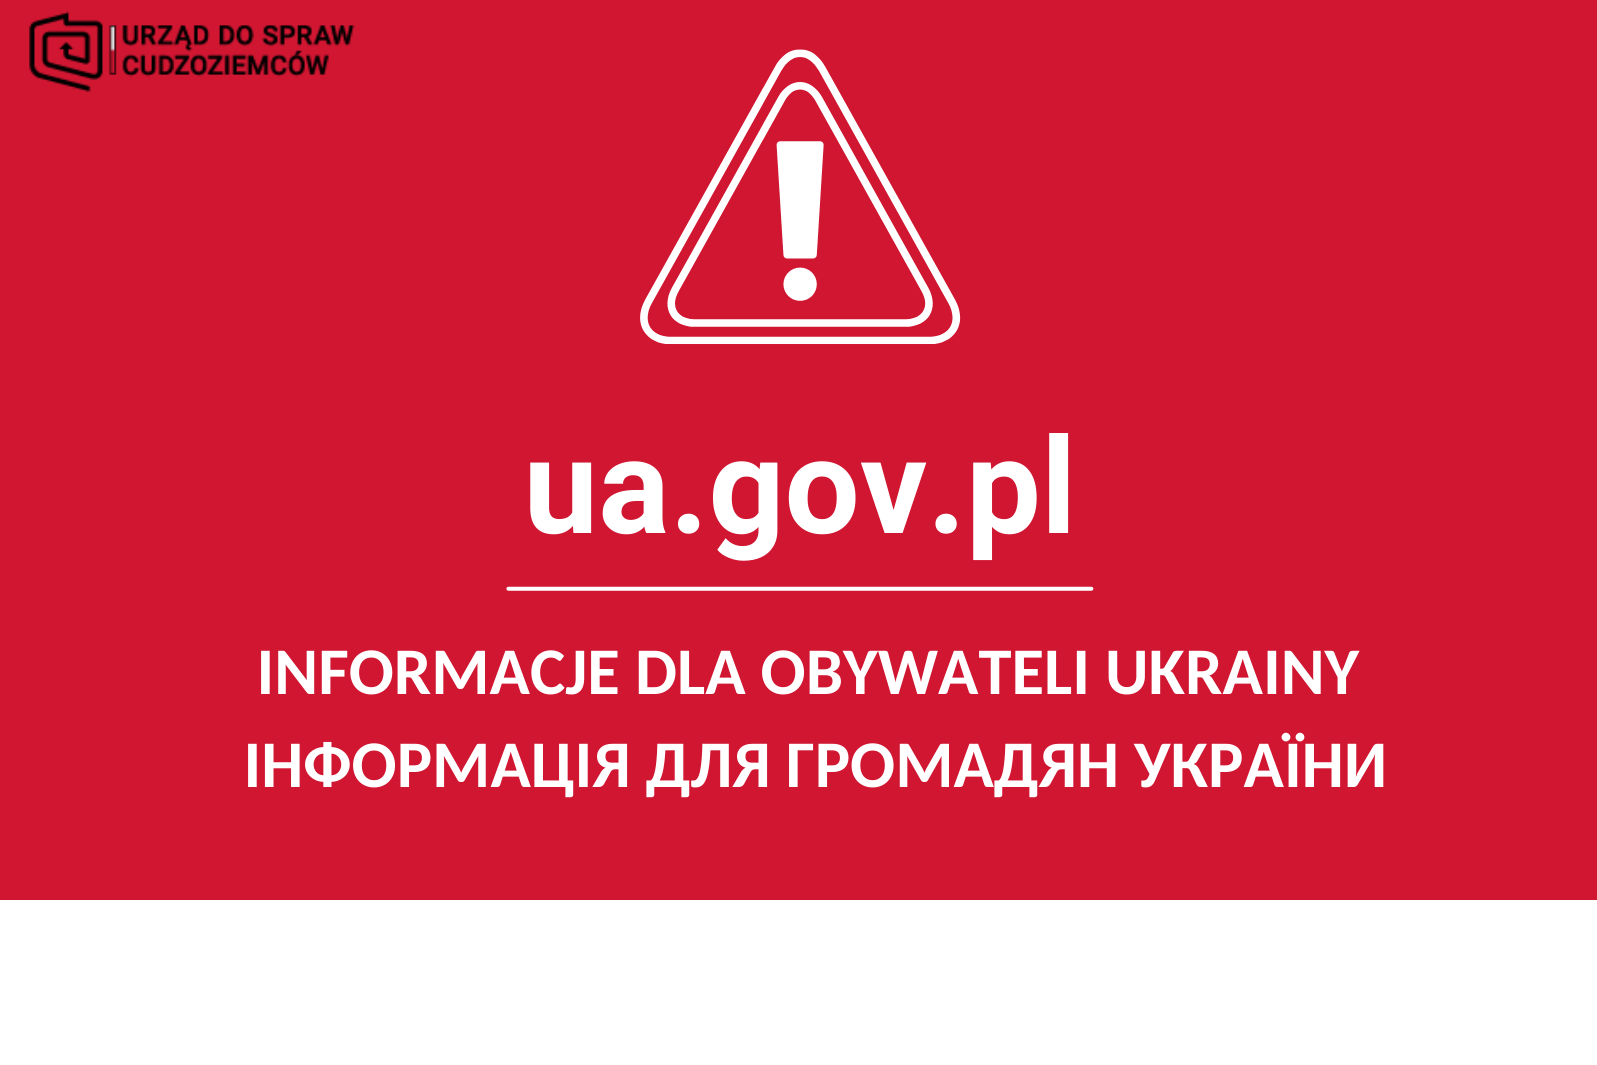 Wykrzyknik na czerwonym tle z adresem strony uw.gov.pl